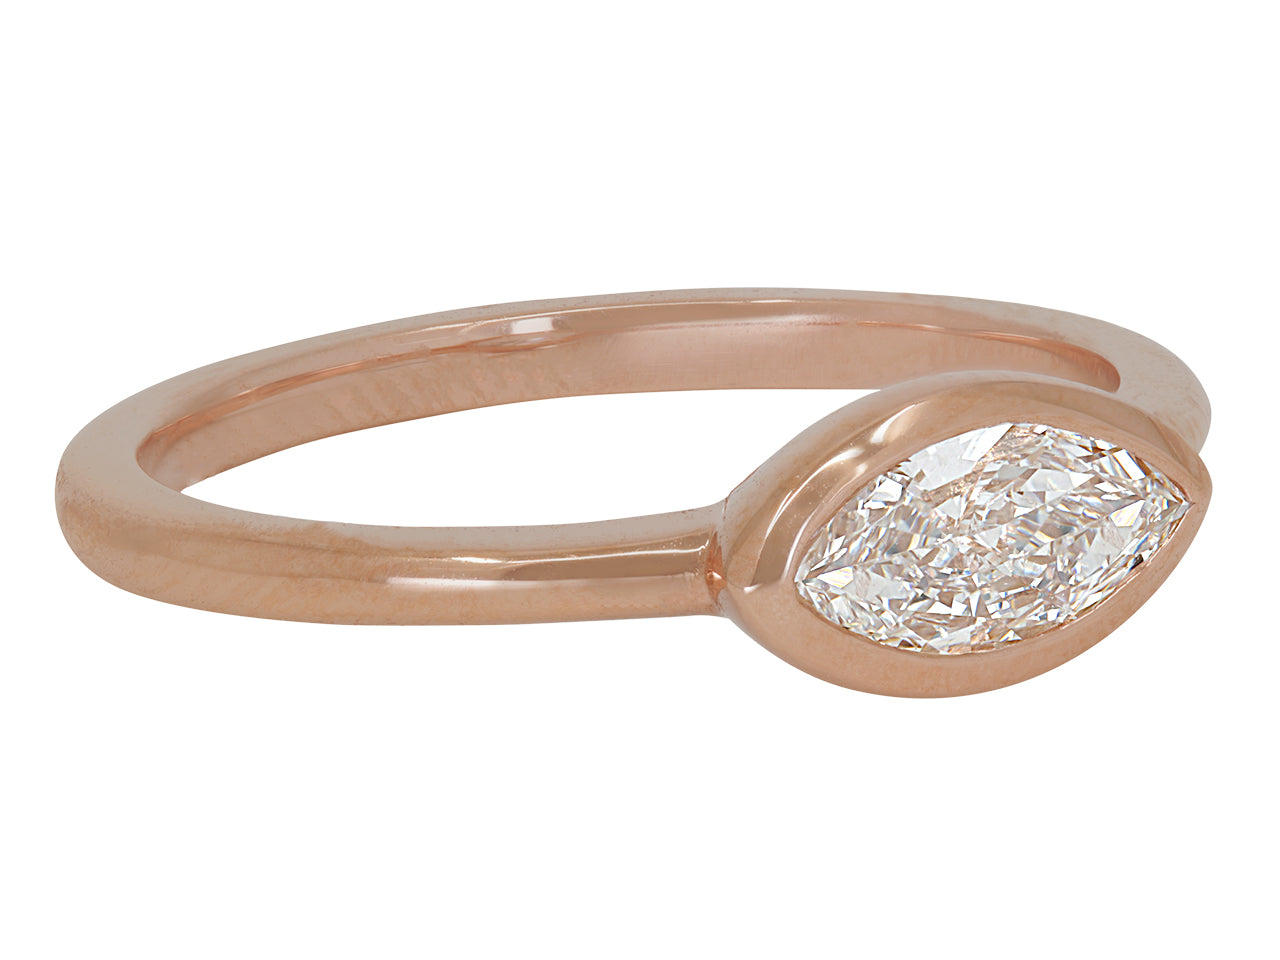 Beladora 'Bespoke' Marquise Diamond Ring in 18k Rose Gold